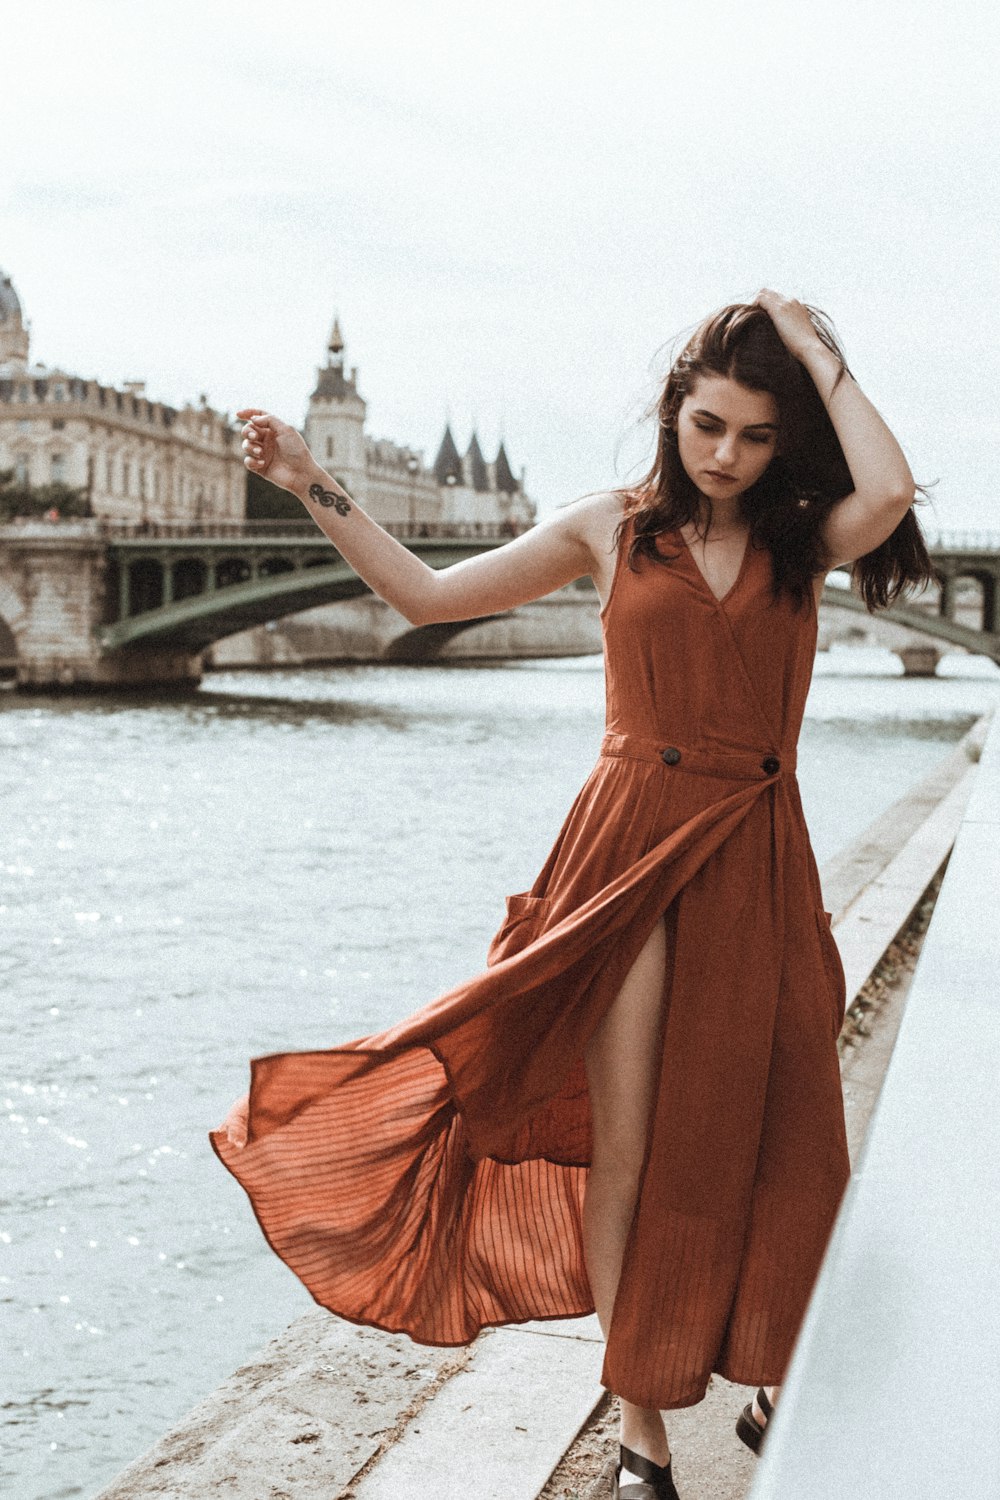 Femme en robe rouge sans manches debout sur le pont pendant la journée